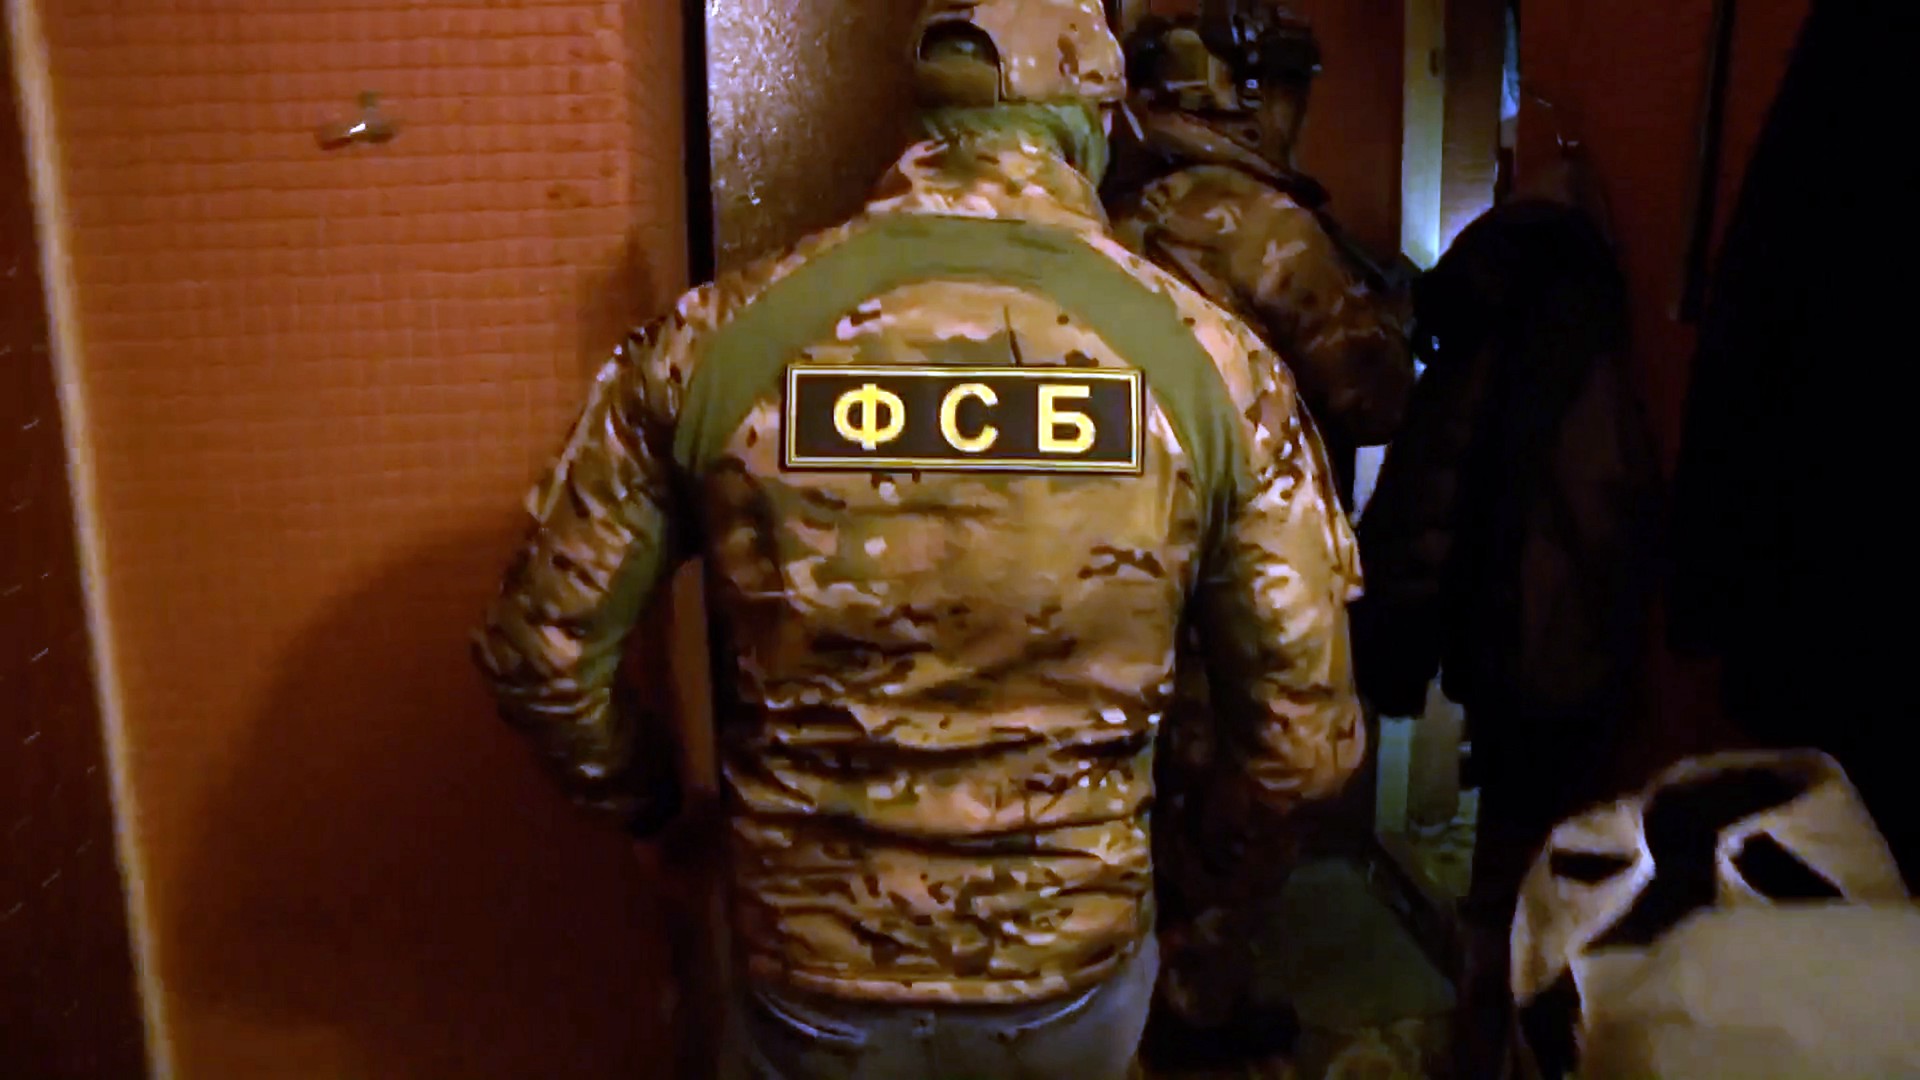 ФСБ нейтрализовала членов ячейки ИГ*, готовивших нападение на синагогу в Москве